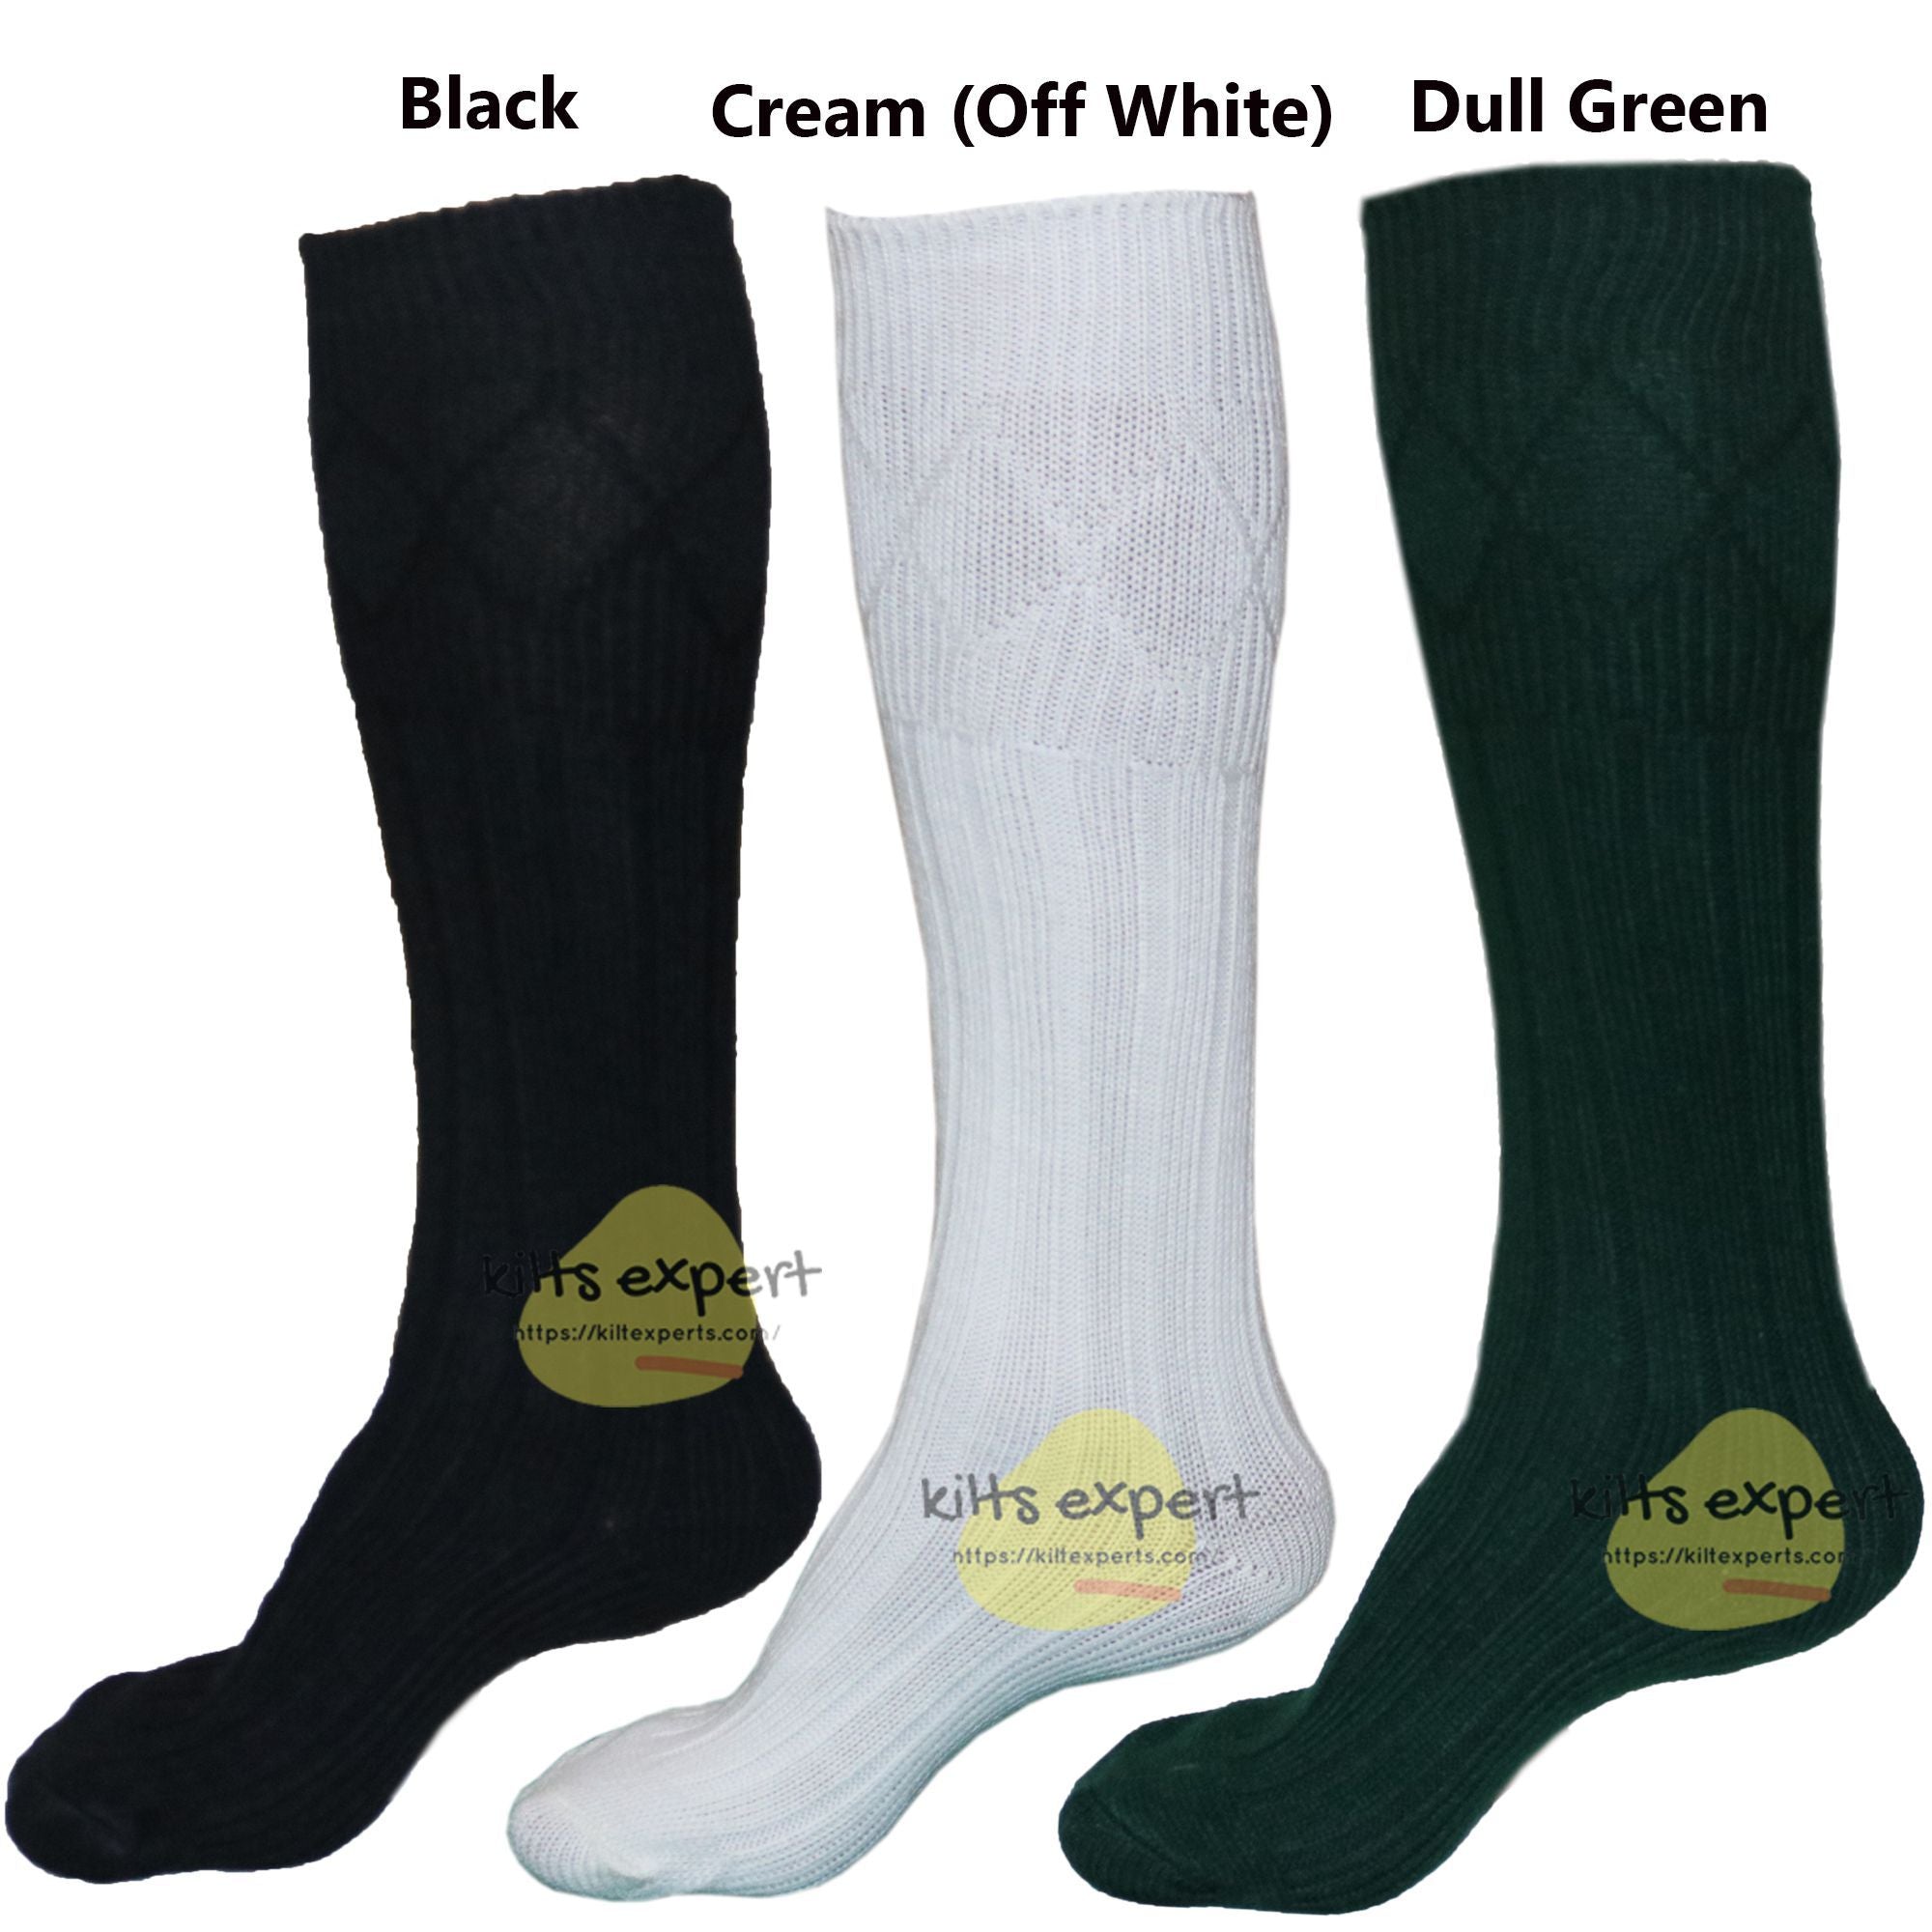 New Men's Scottish Highland Wear Long 65% Wool Kilt Hose Socks Kilt Experts